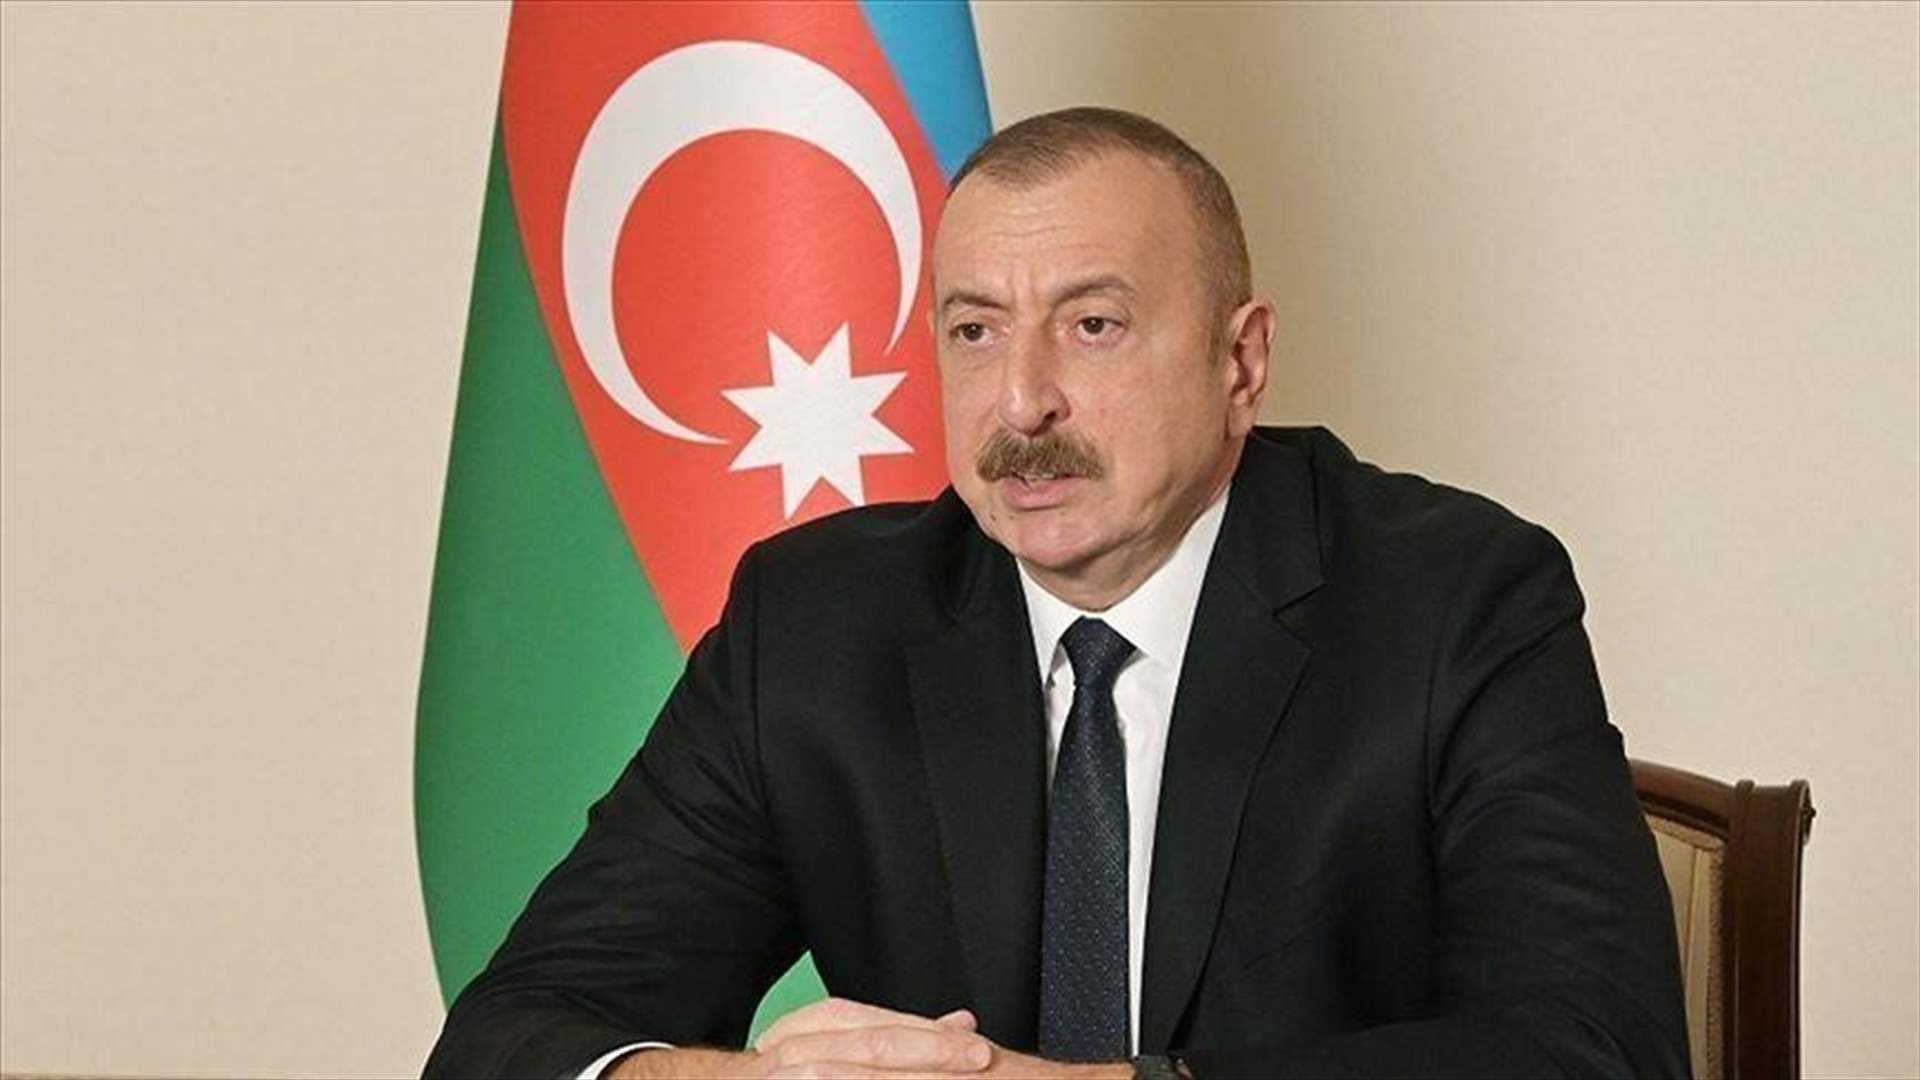 الرئيس الأذربيجاني لبلينكن: عملية ناغورني قره باغ ستتوقف في هذه الحال